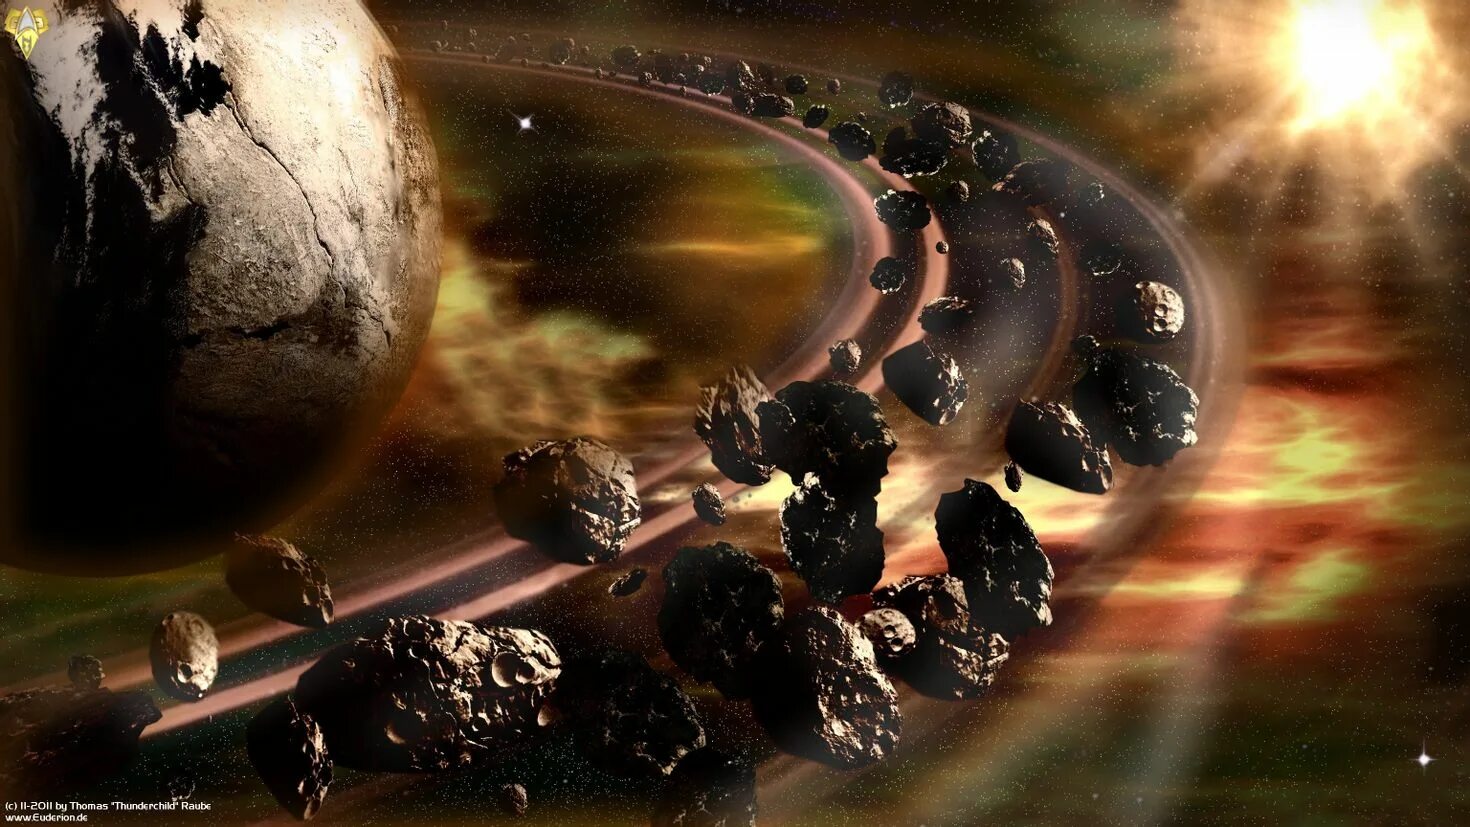 Вселенная долго скучала и уничтожала планету. Пояс астероидов Планета Фаэтон. Пояс астероидов Марс Юпитер. Пояс астероидов Фаэтон НАСА. Кольцо астероидов в солнечной системе.